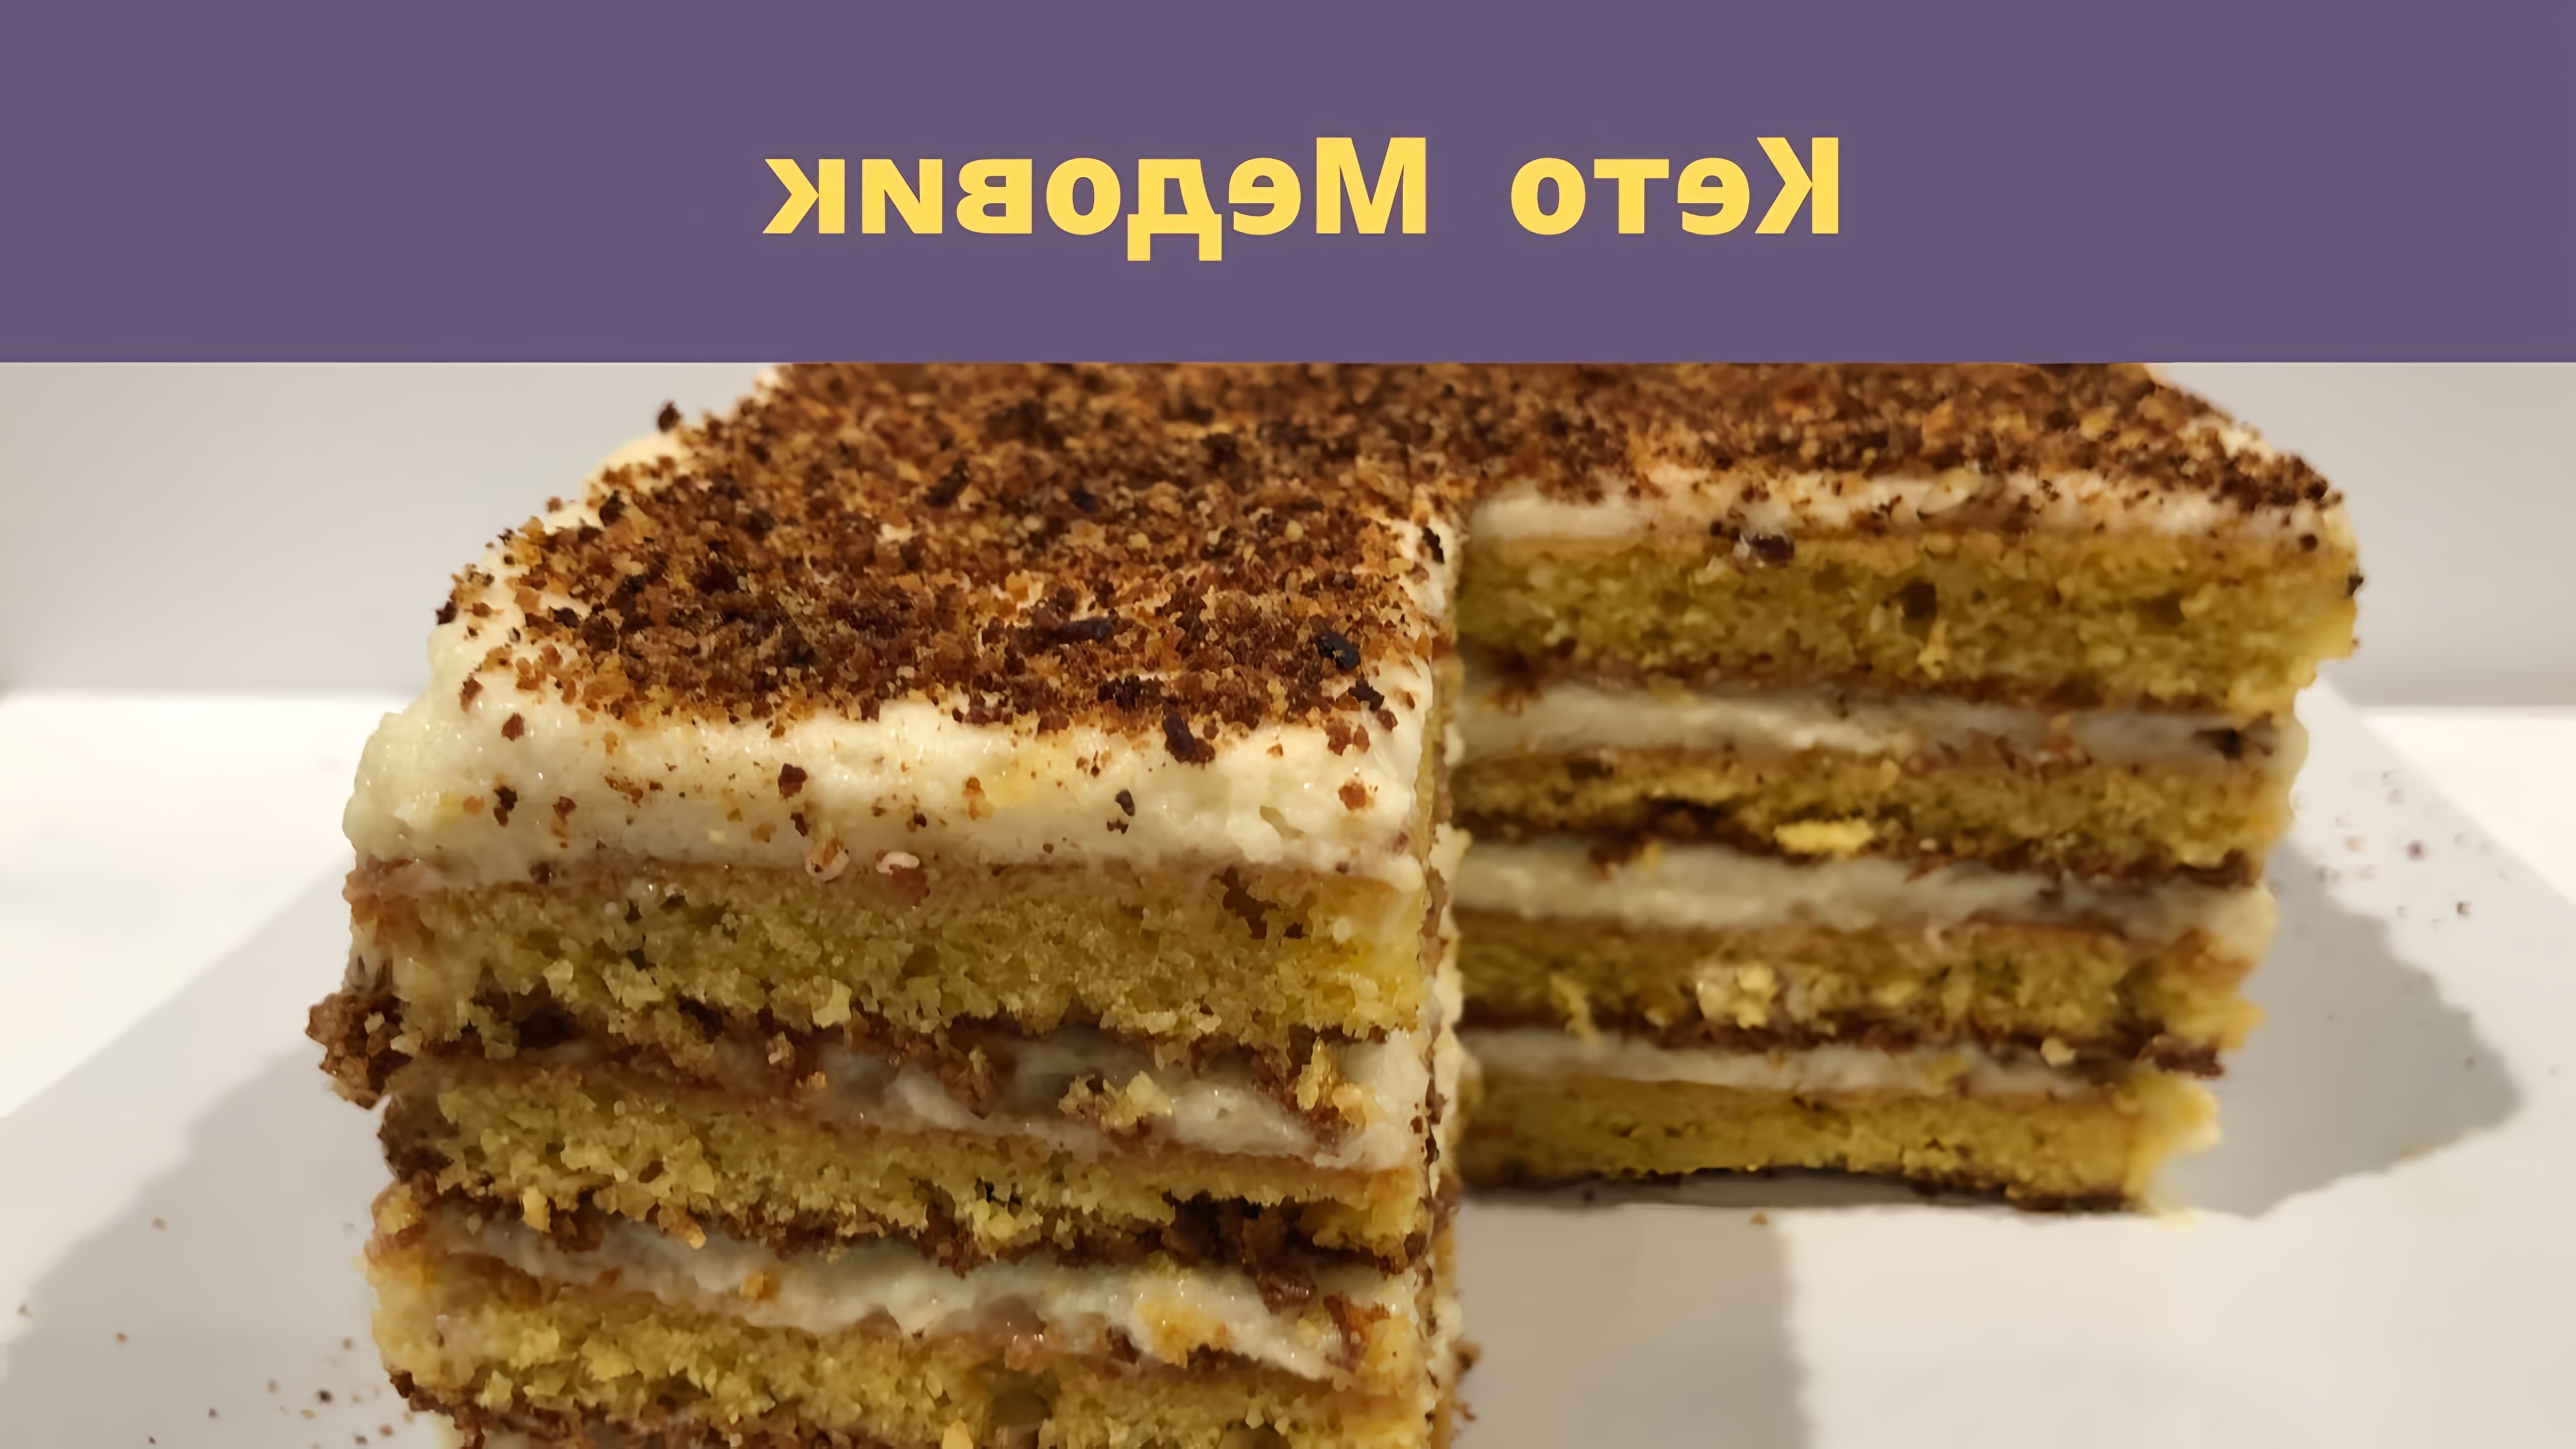 В этом видео рассказывается о рецепте торта "Медовик", который готовится без использования муки и сахара